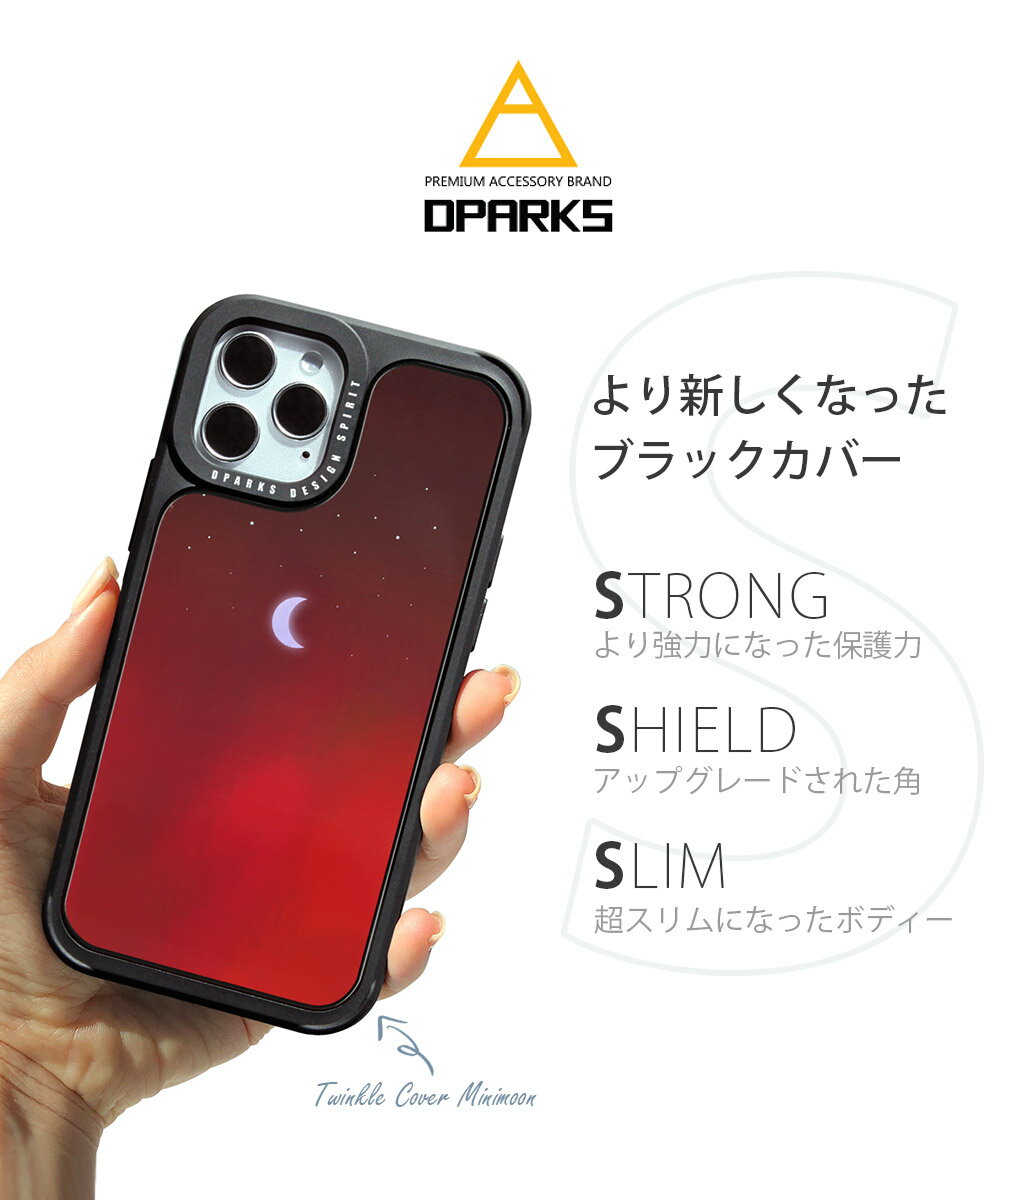 アイフォン 12 ケース mini 耐衝撃 ハードケース Dparks TWINKLE COVER ミニムーンiphone 12 pro カバー iphone 12 mini ケース 可愛い 背面 かわいい ハードカバー ブラック ホログラム レッド ブルー 韓国 おもしろ ブランド